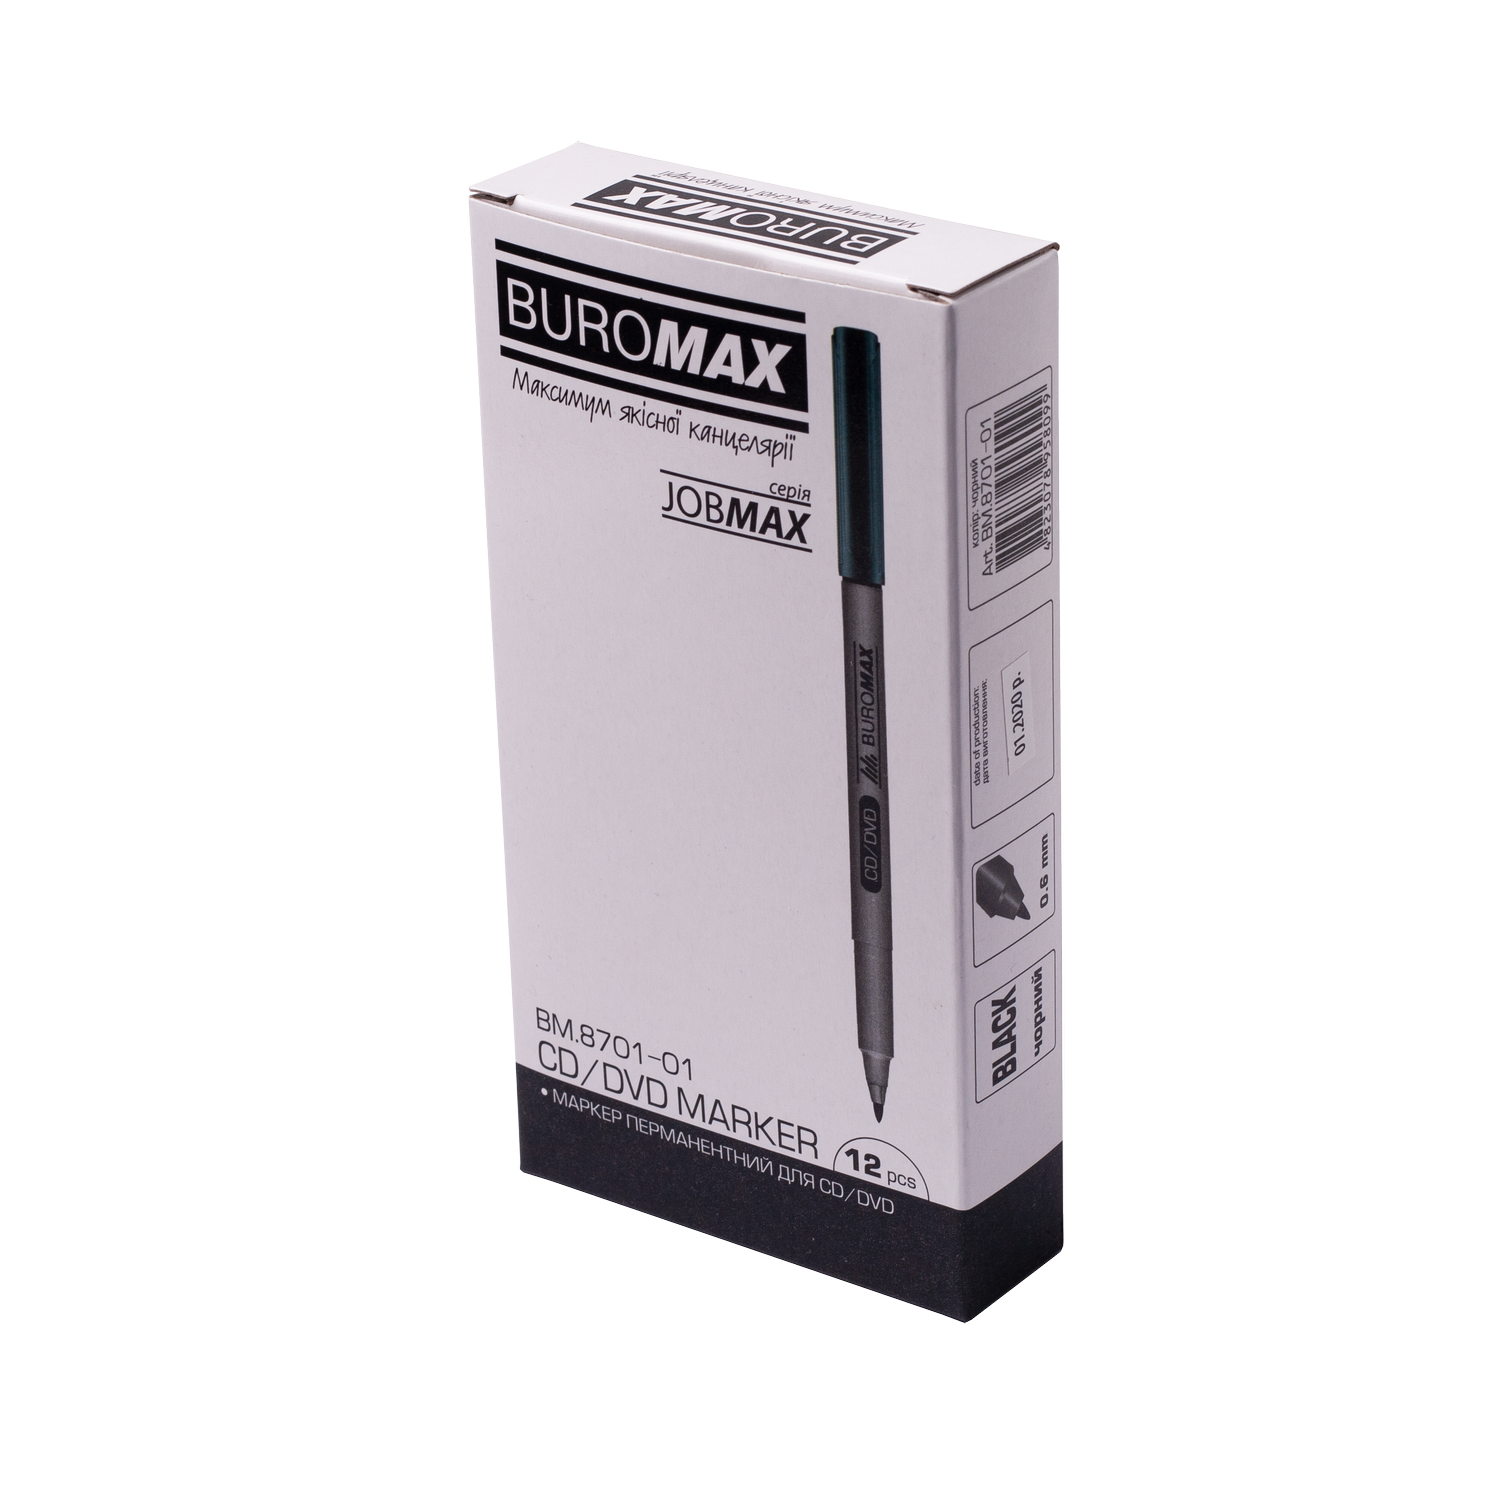 Маркер Buromax Jobmax водостійкий 0.6 мм чорний (BM.8701-01) - фото 3